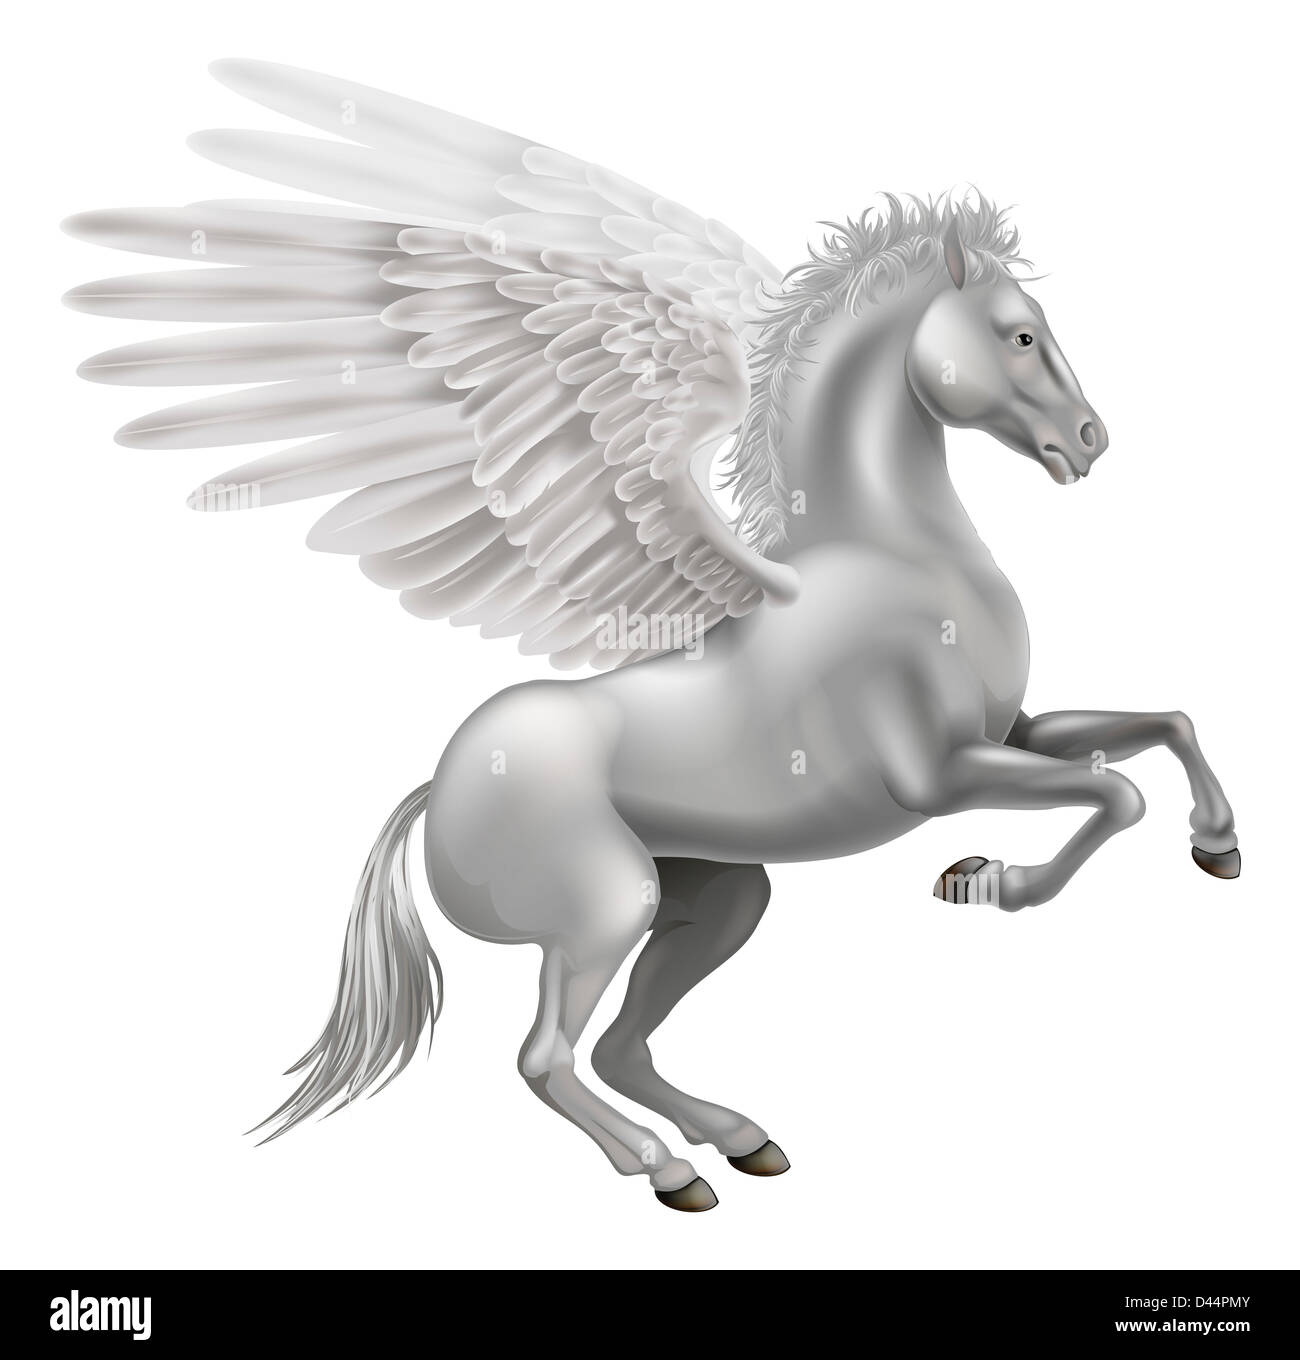 Abbildung des legendären geflügelten Pferd aus der griechischen Mythologie, Pegasus Stockfoto